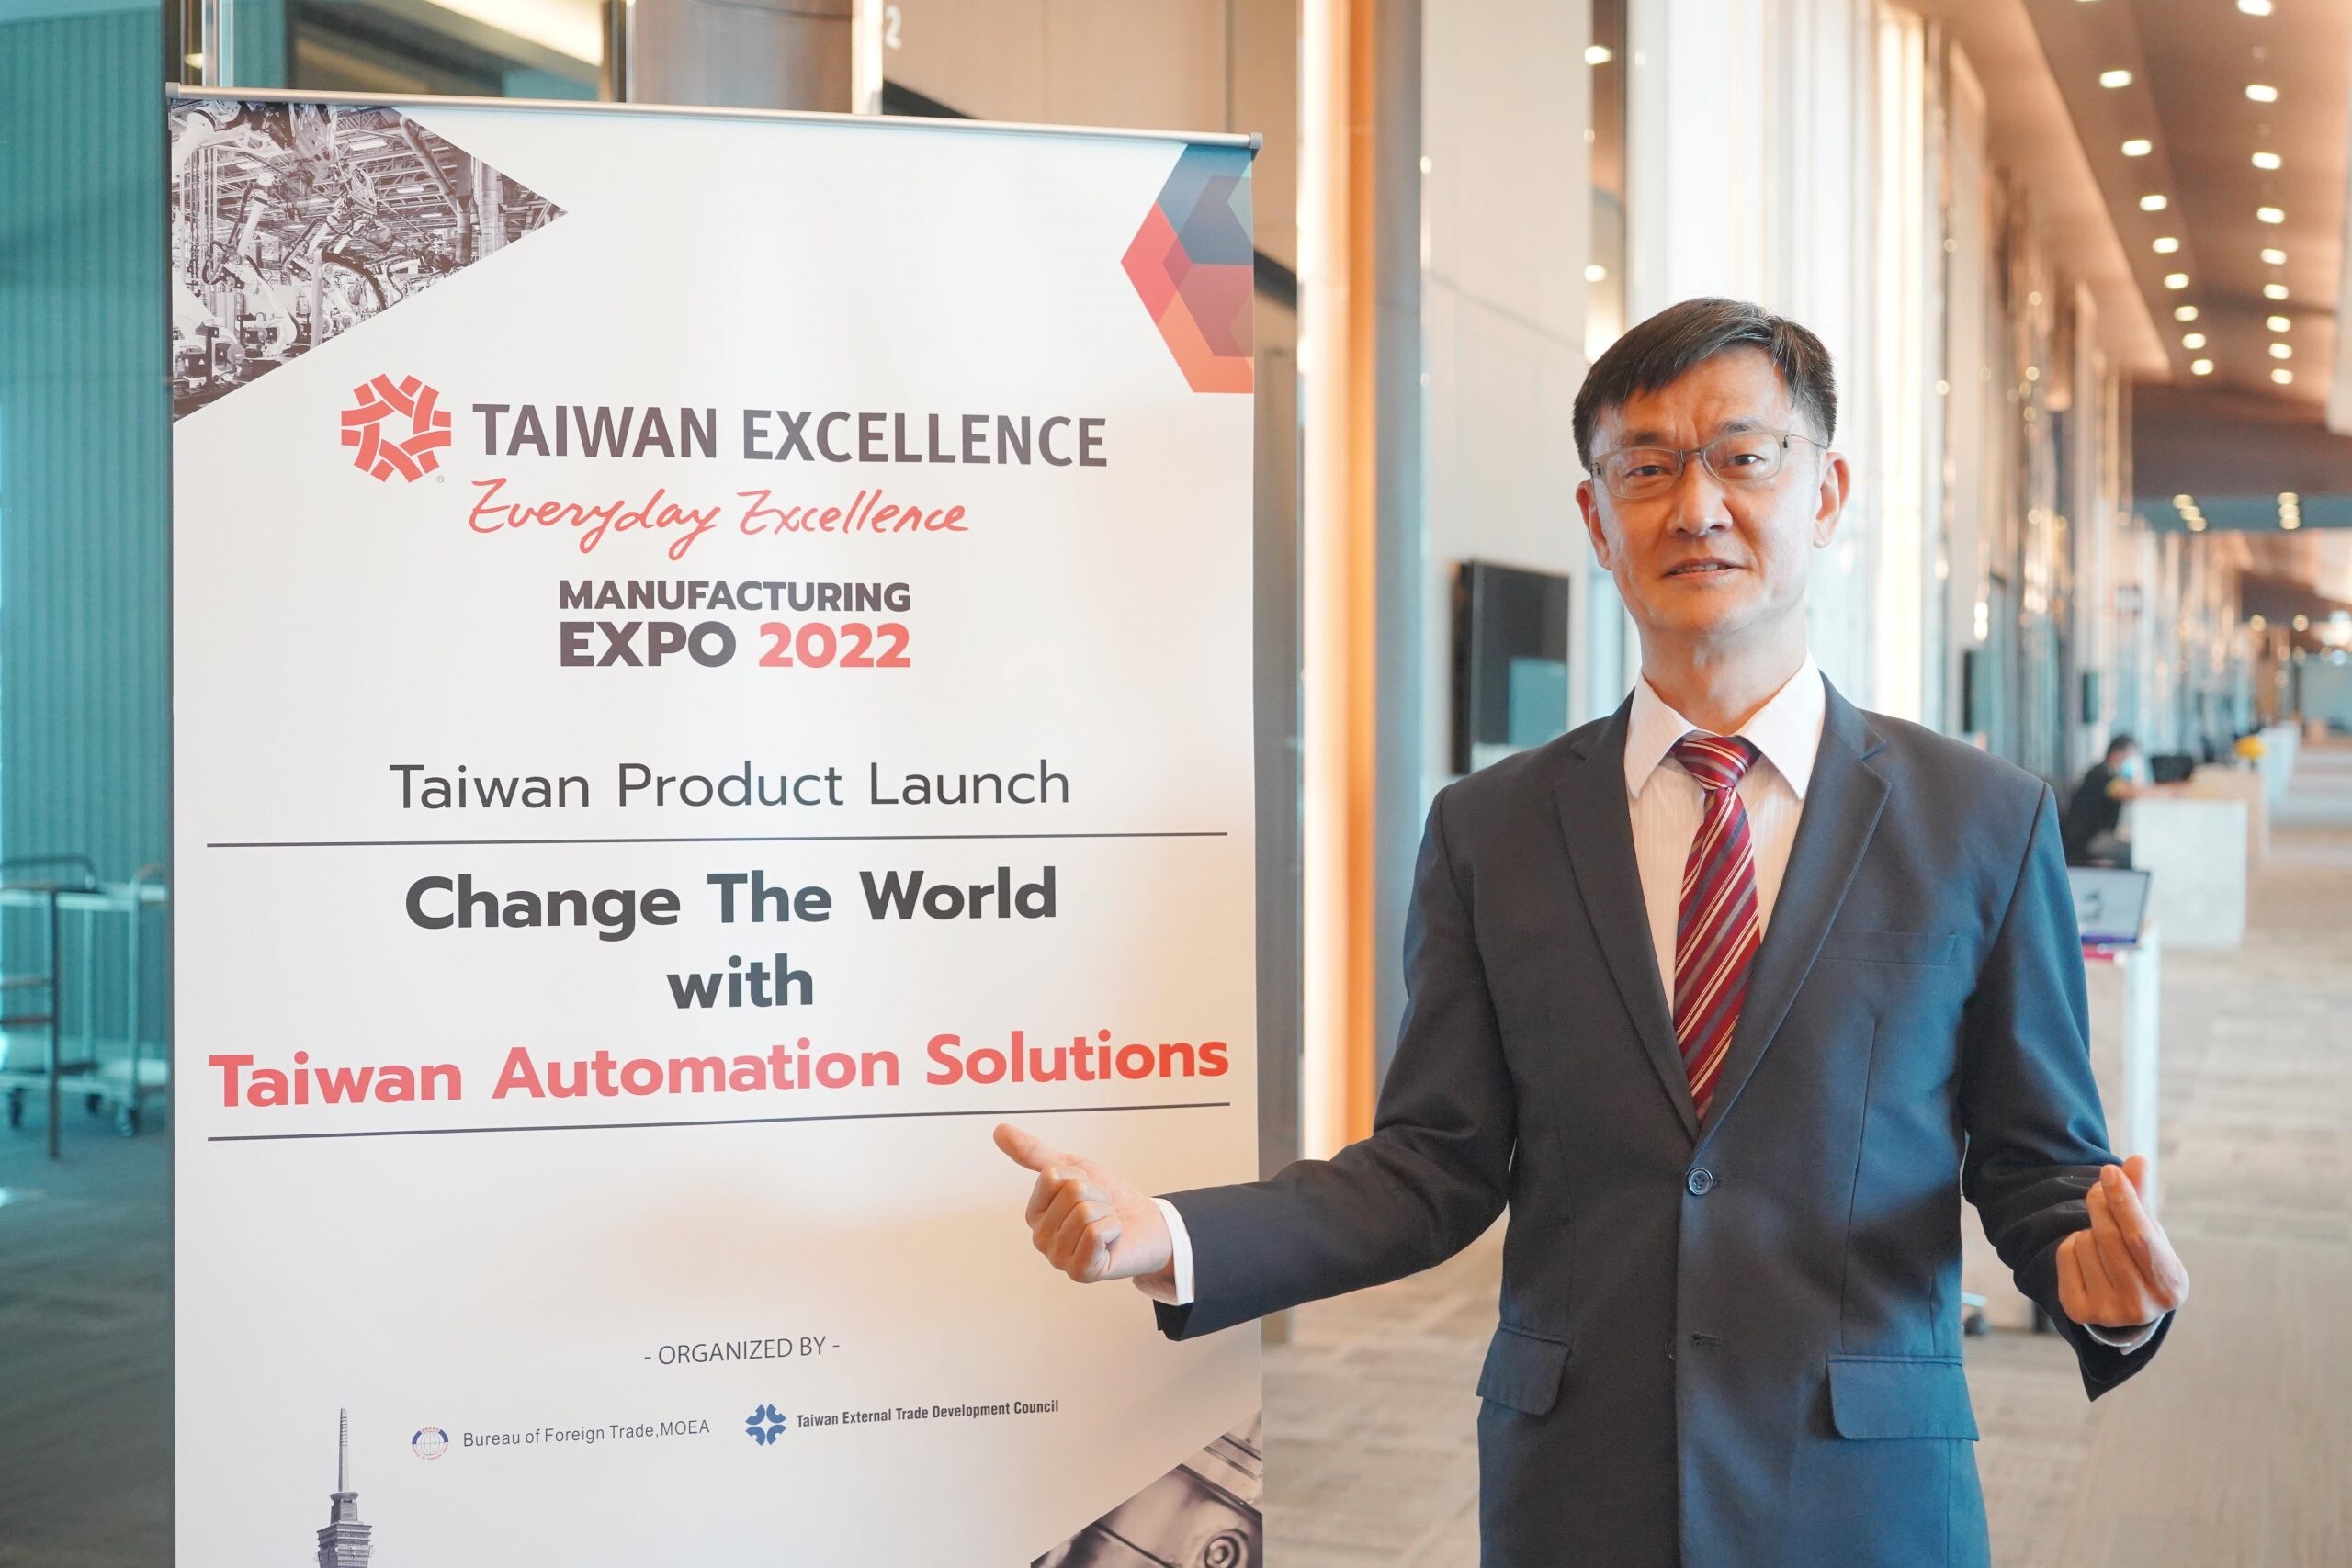 "ไต้หวัน" เปิดพาวิเลียน Taiwan Excellence กลางงาน Manufacturing Expo 2022